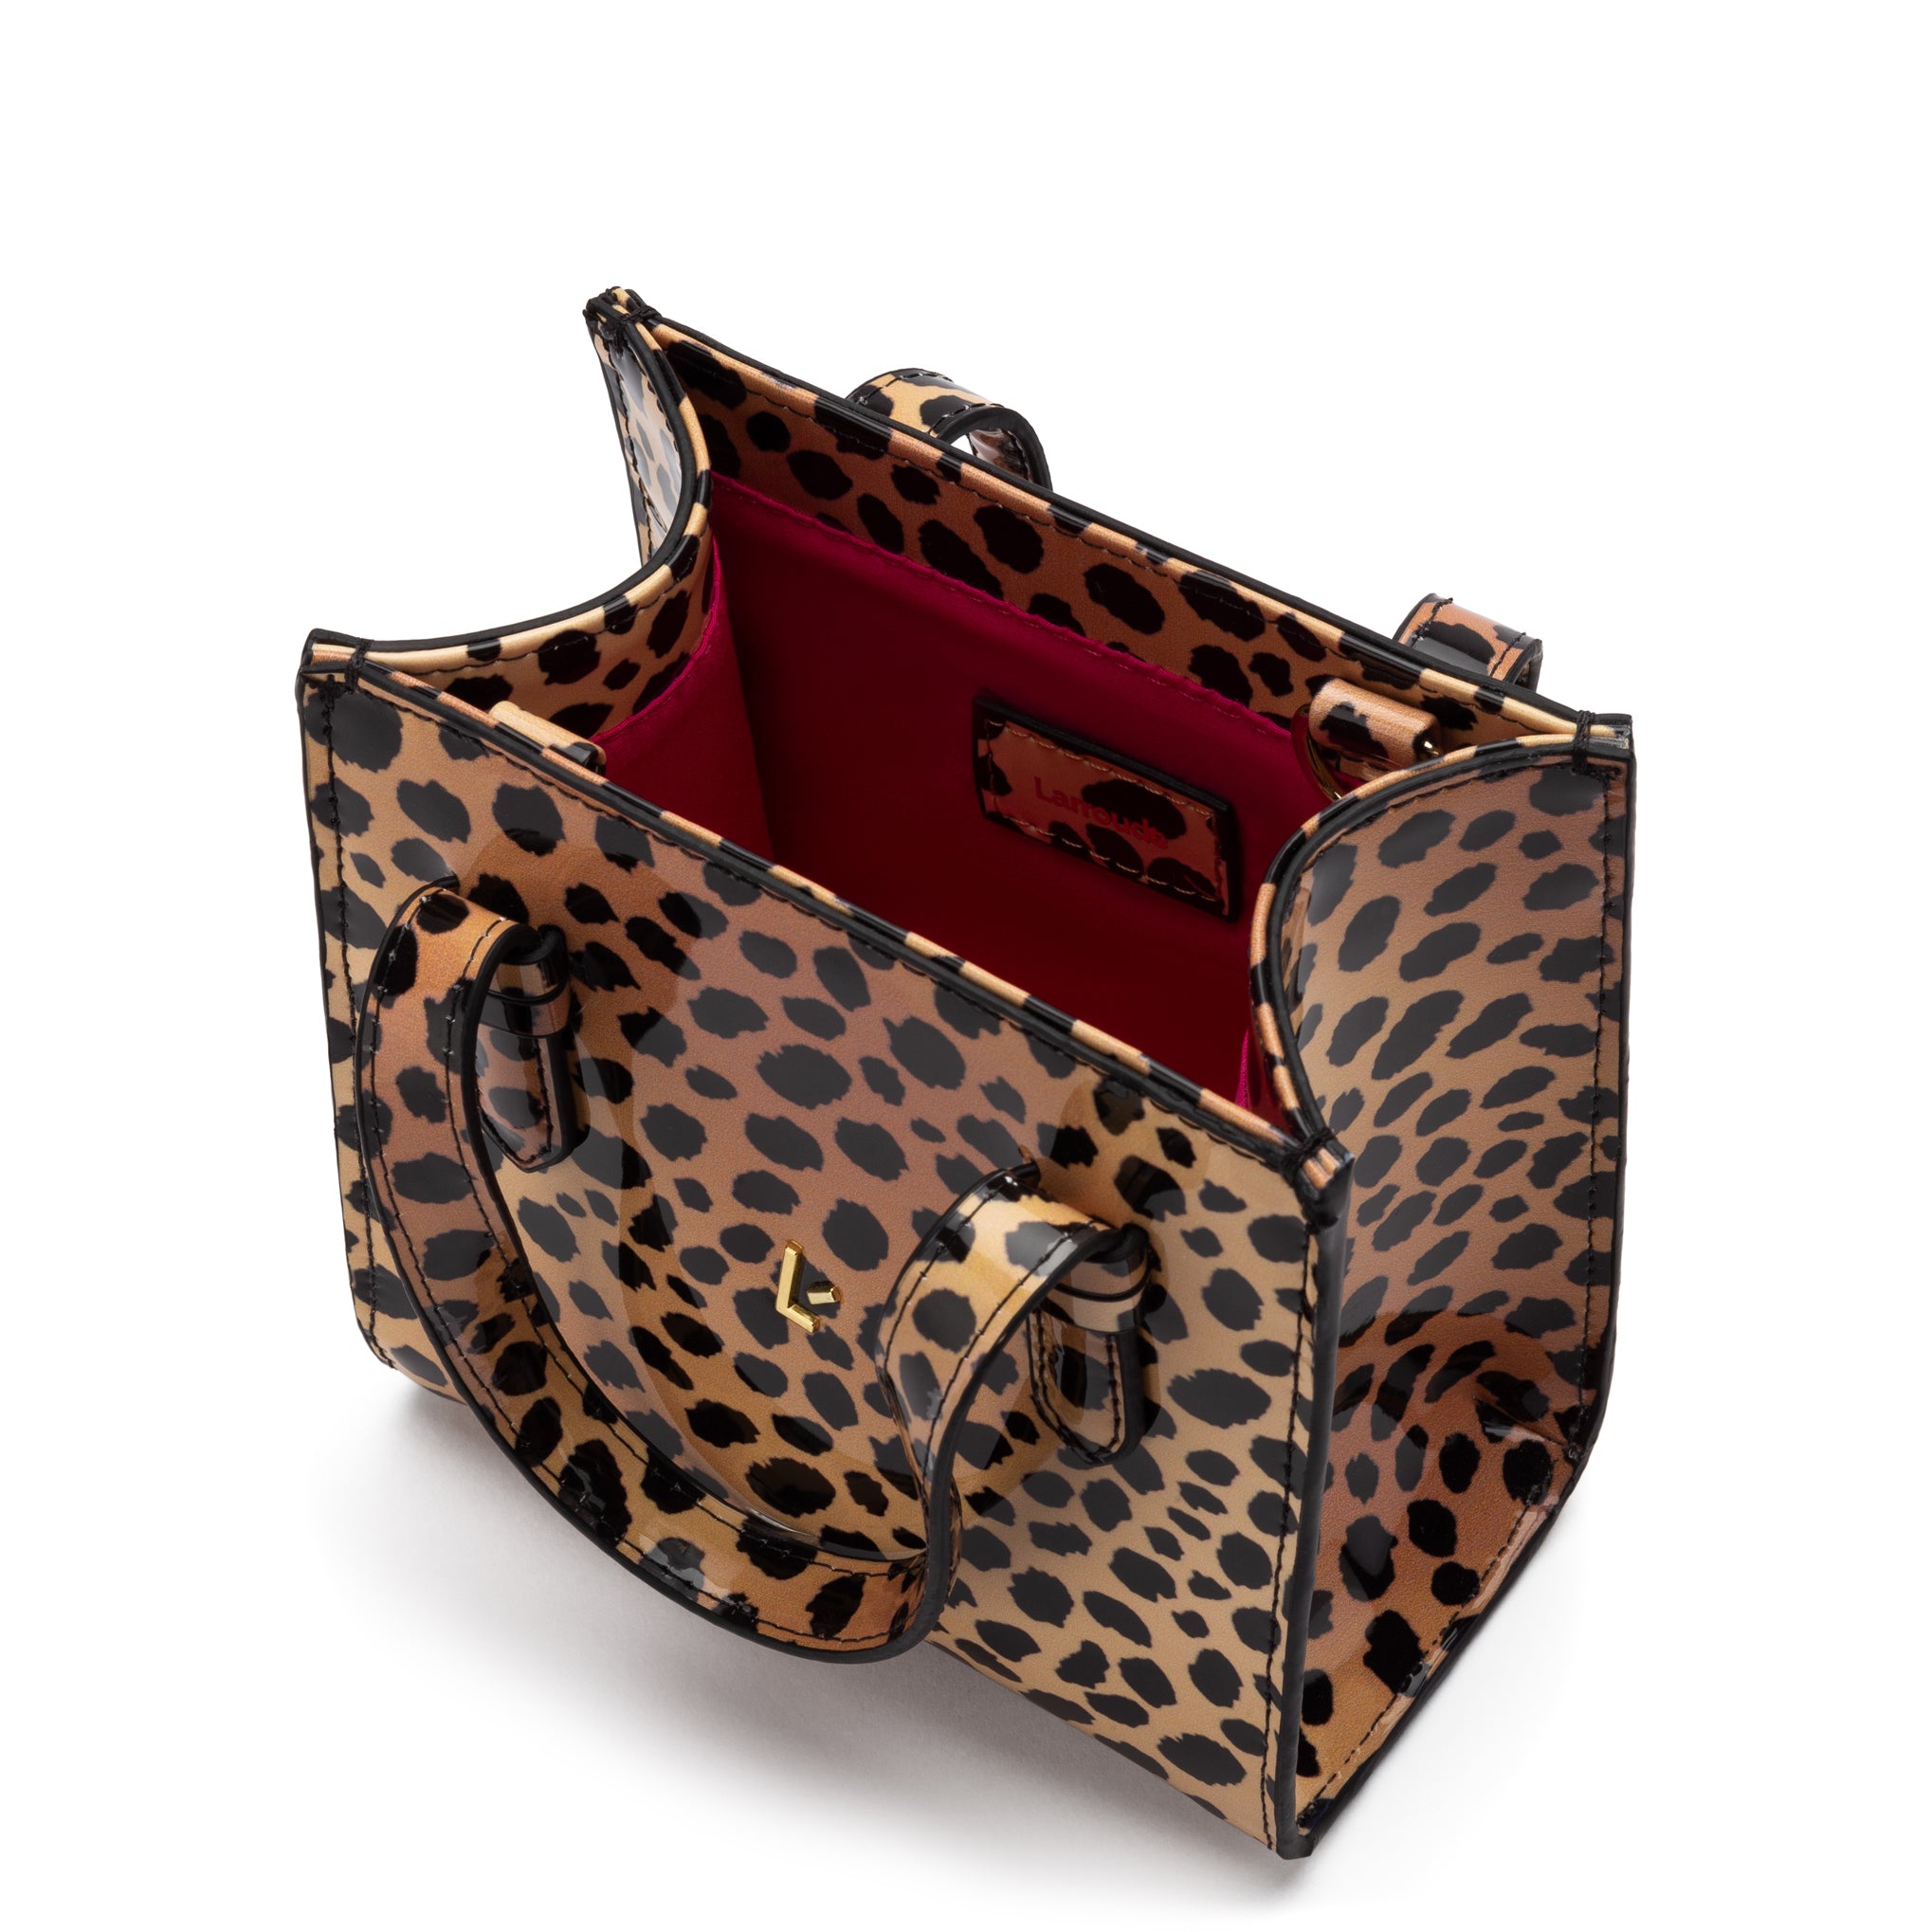 Larroudé Mini Phoebe Tote Bag in Cheetah Print Vegan Patent Leather U